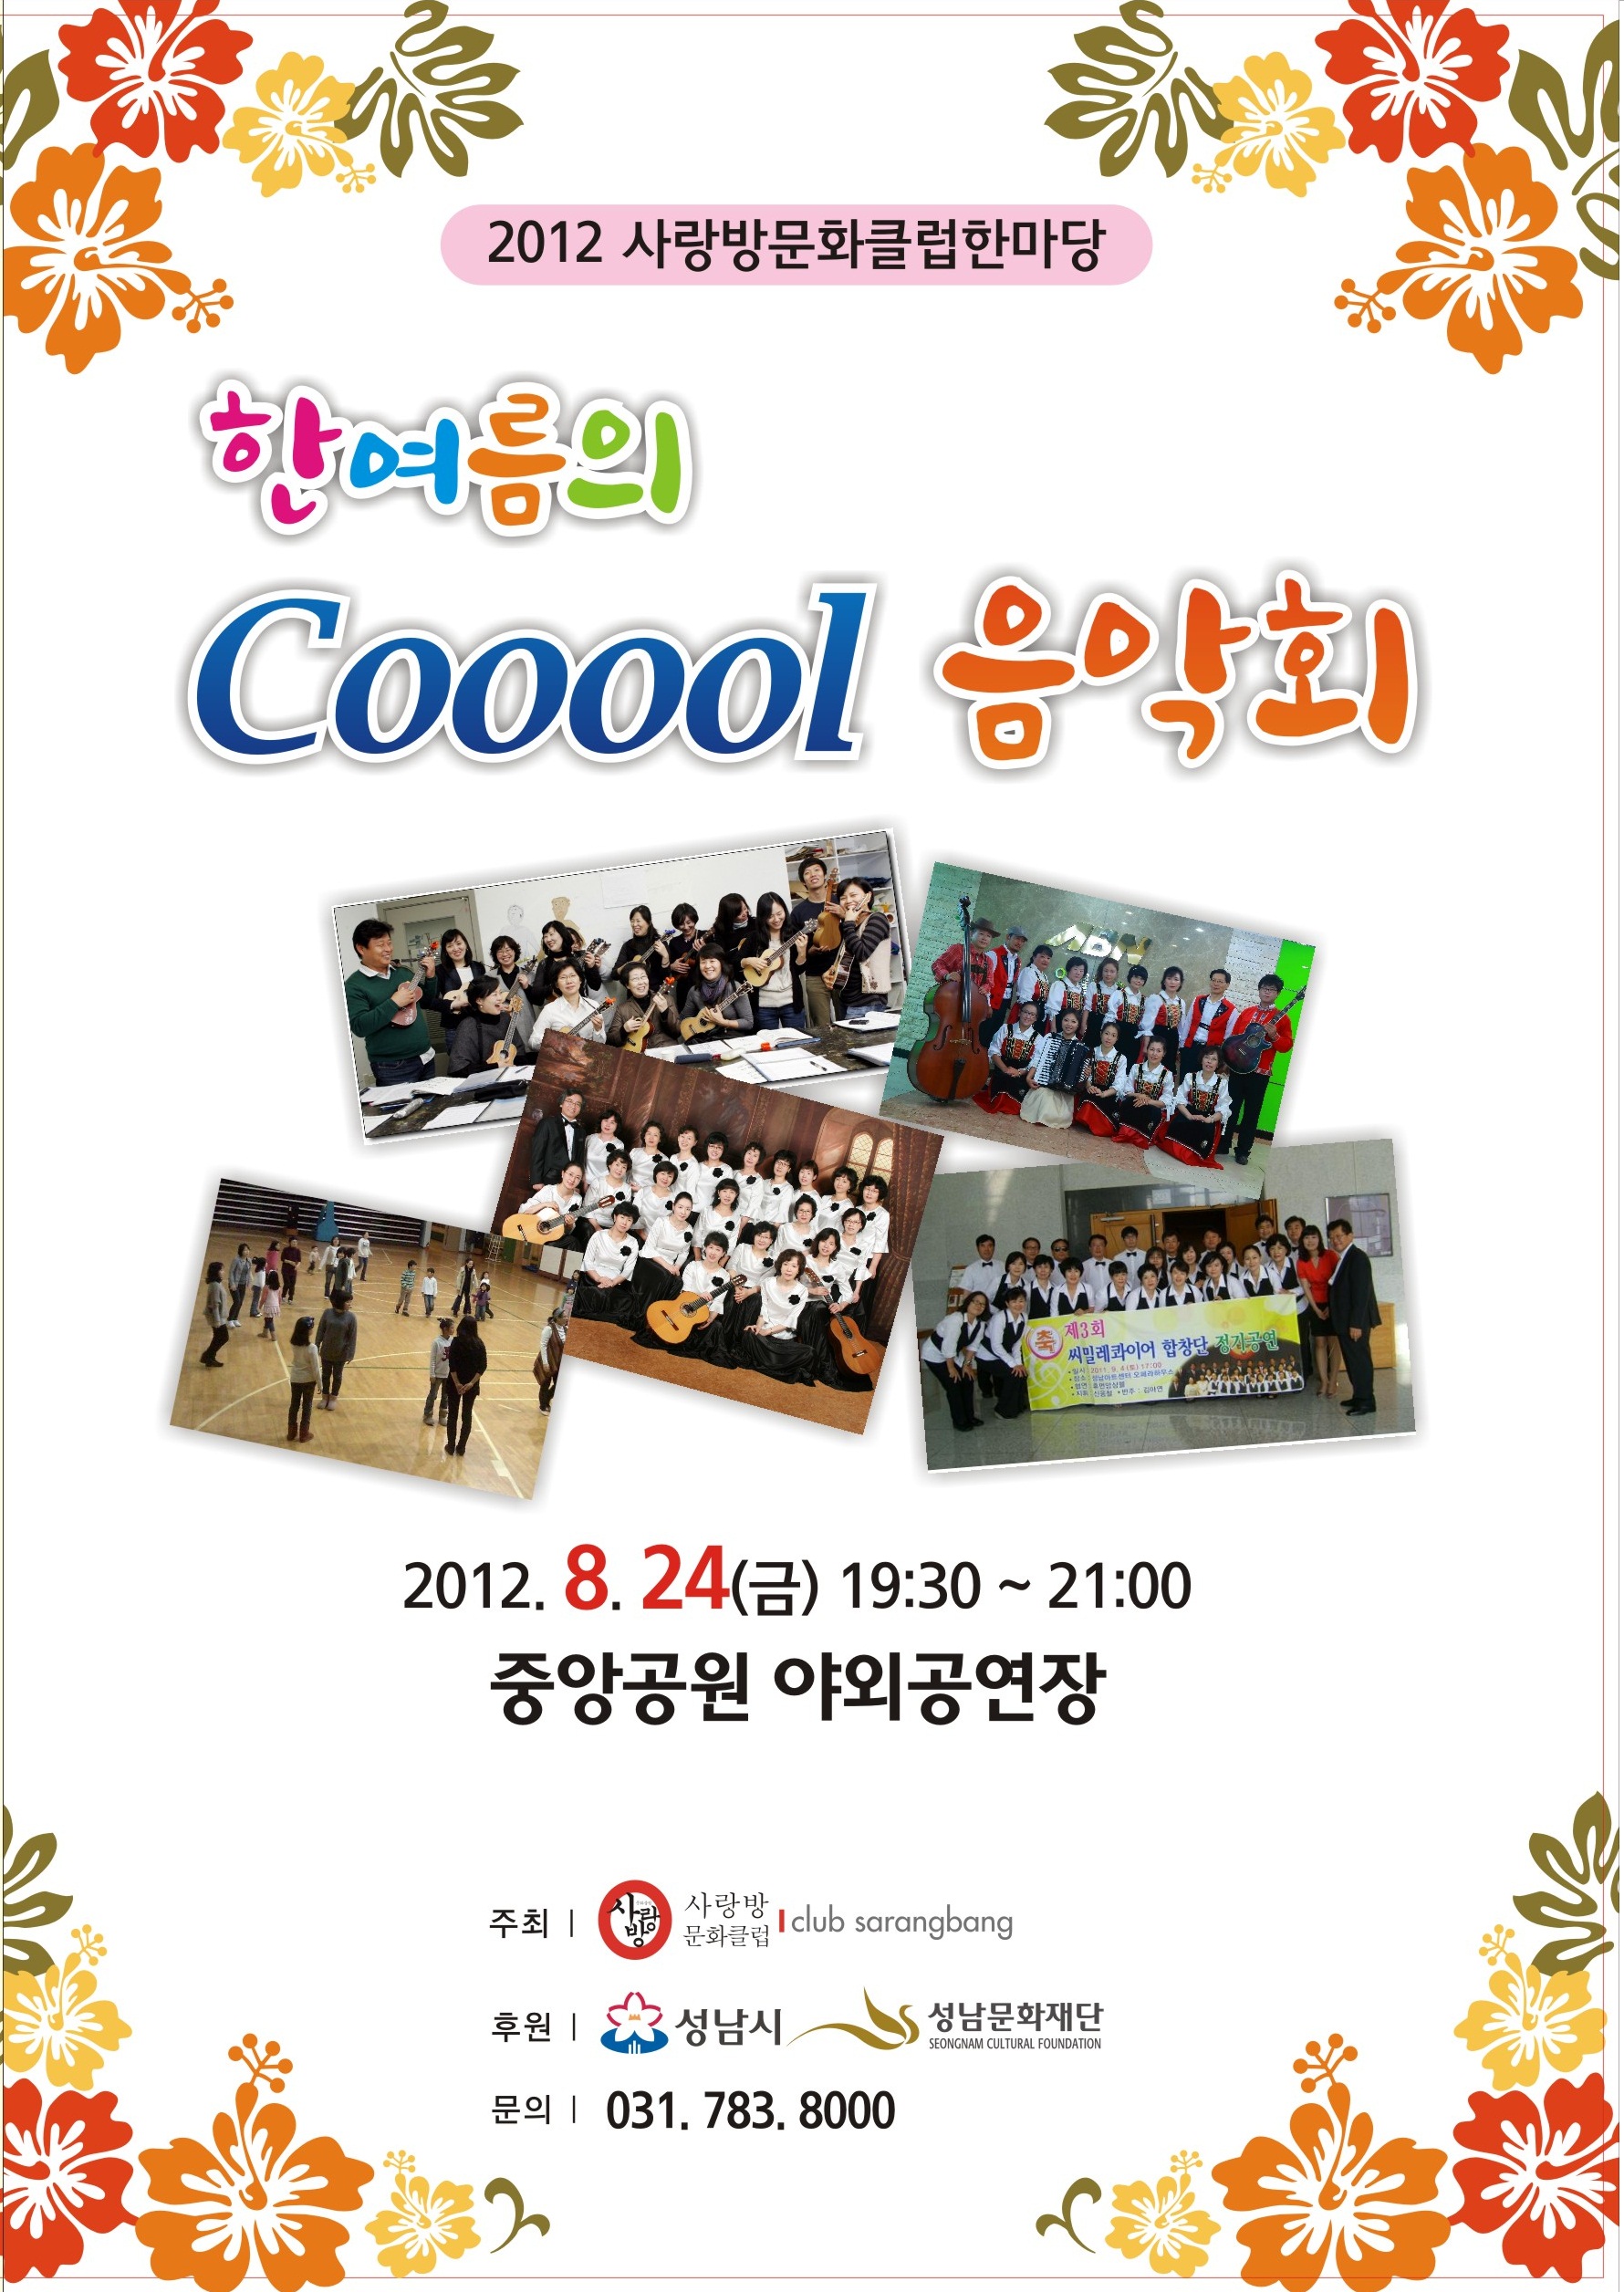 2012 사랑방문화클럽한마당 'Cooool 음악회'